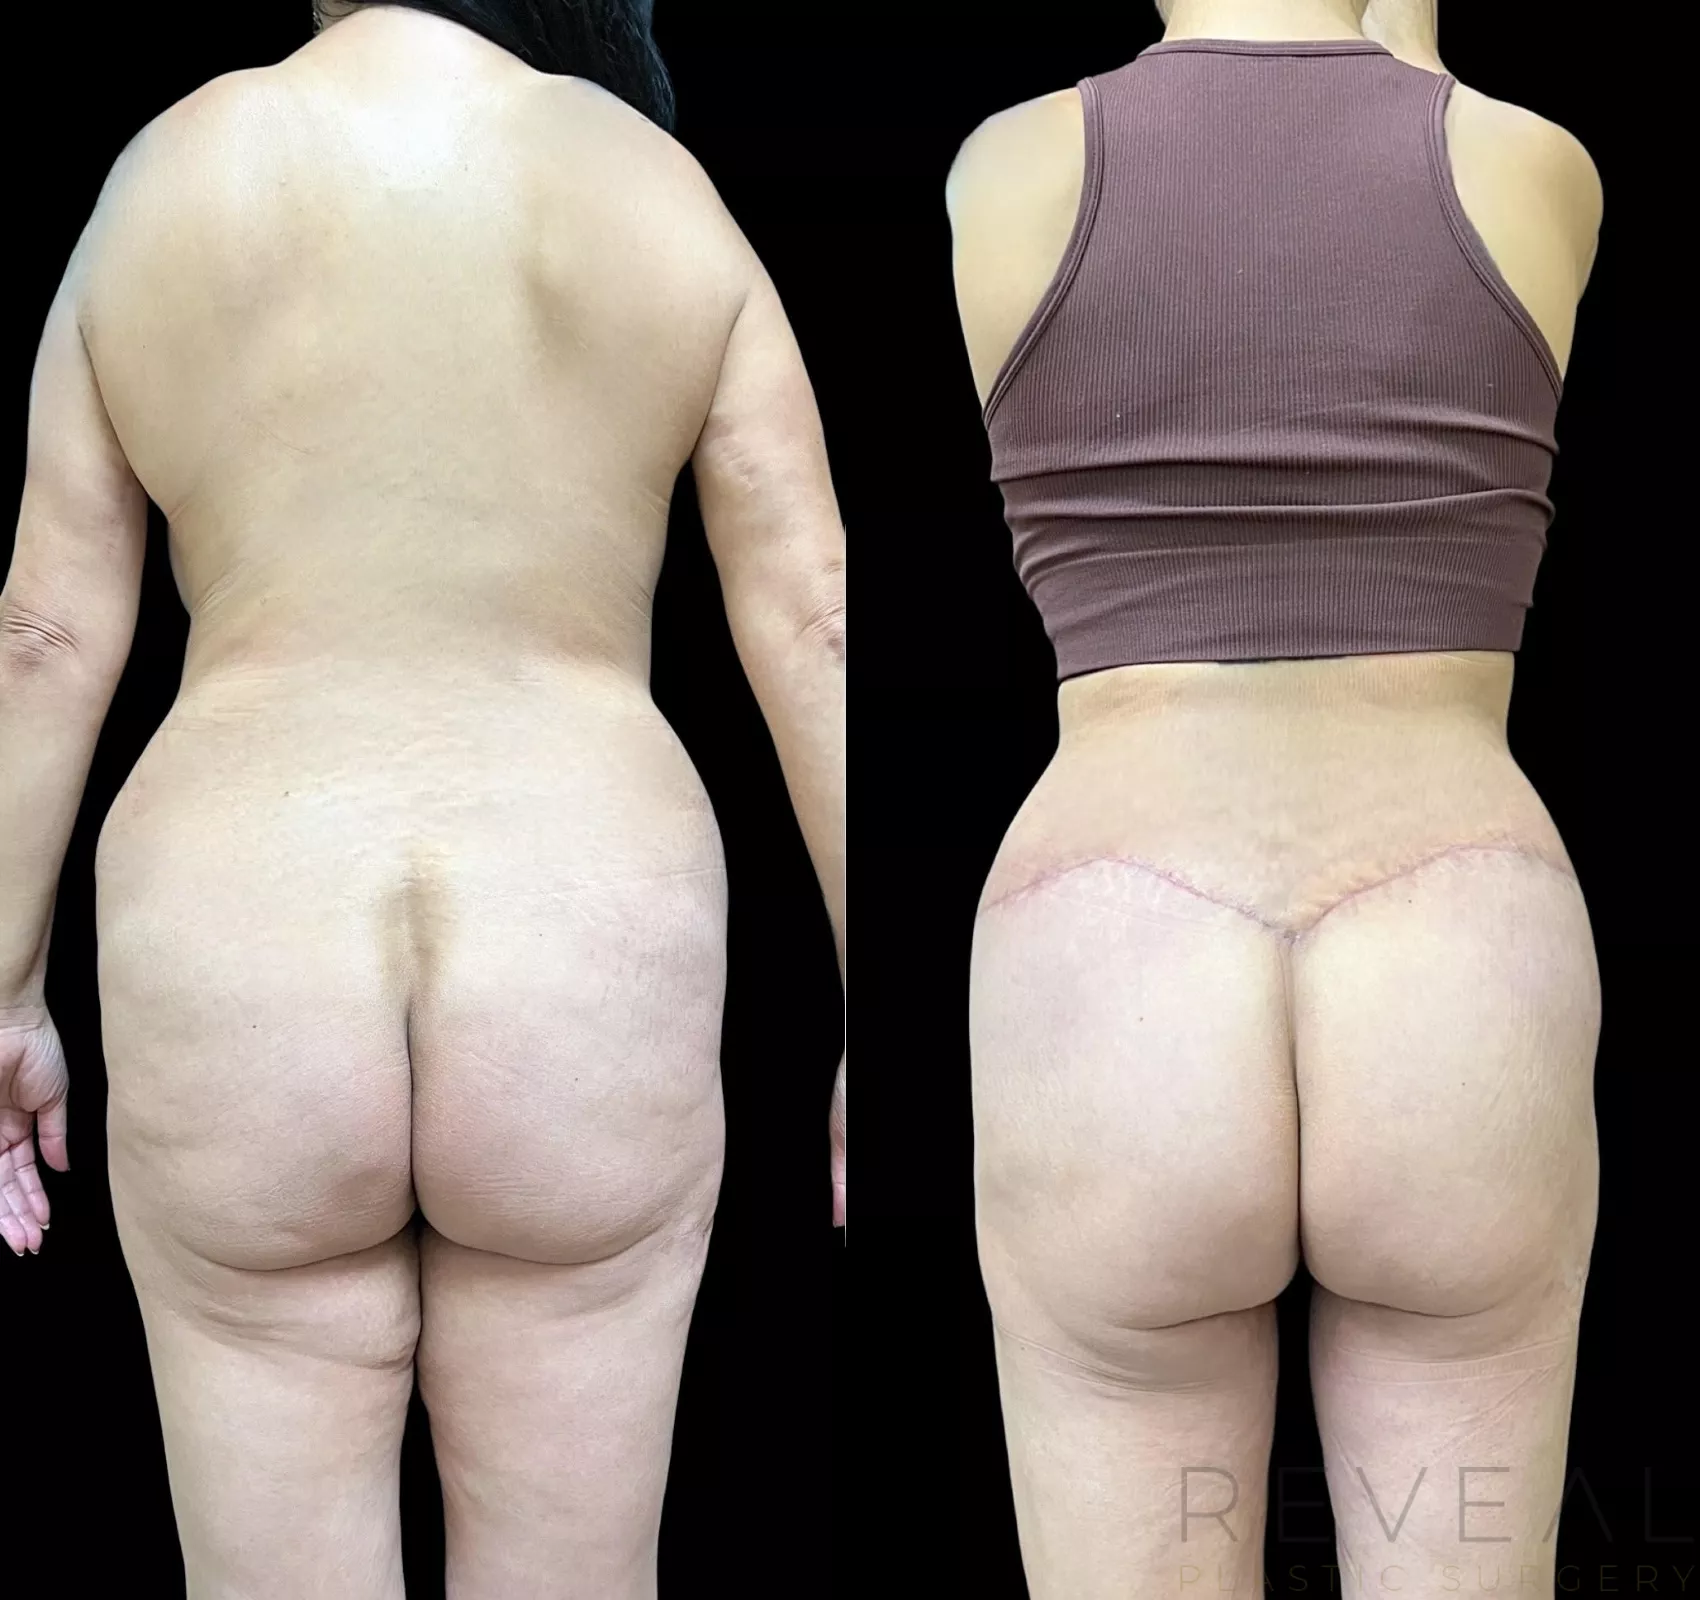 https://images.revealplasticsurgery.com/content/images/body-lift-694-back-detail.webp